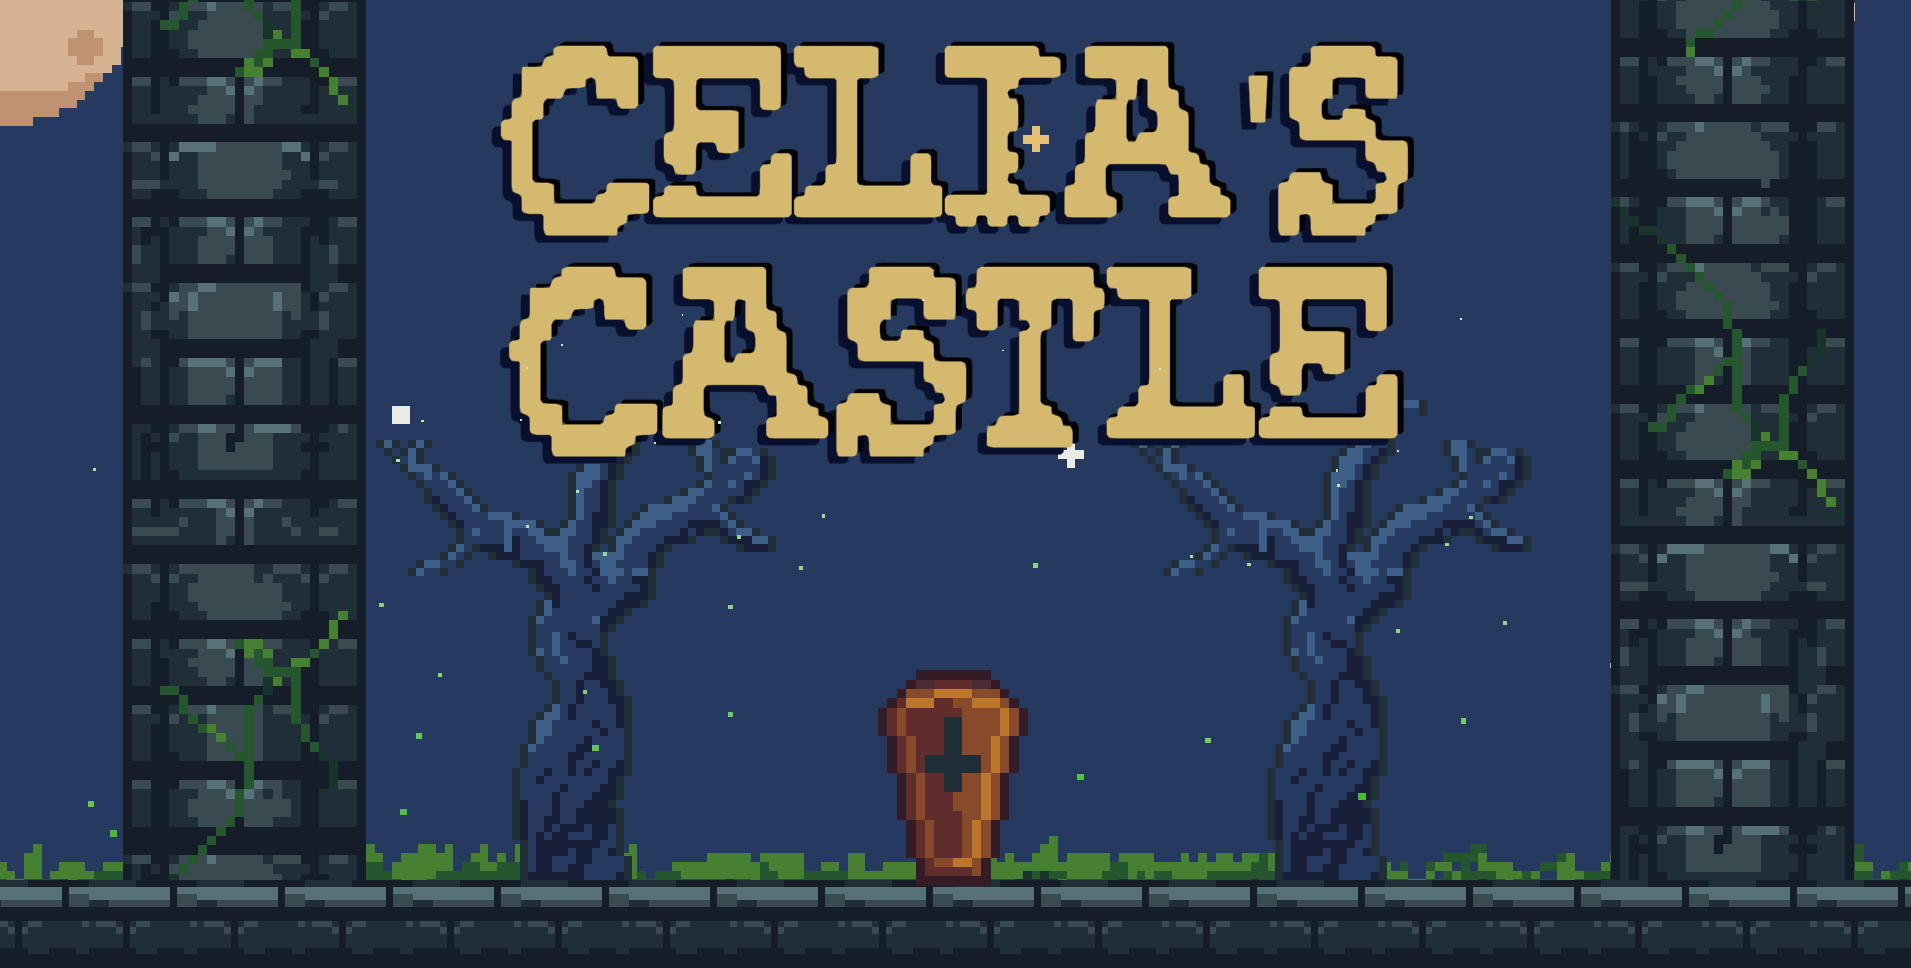 Celia's Castle